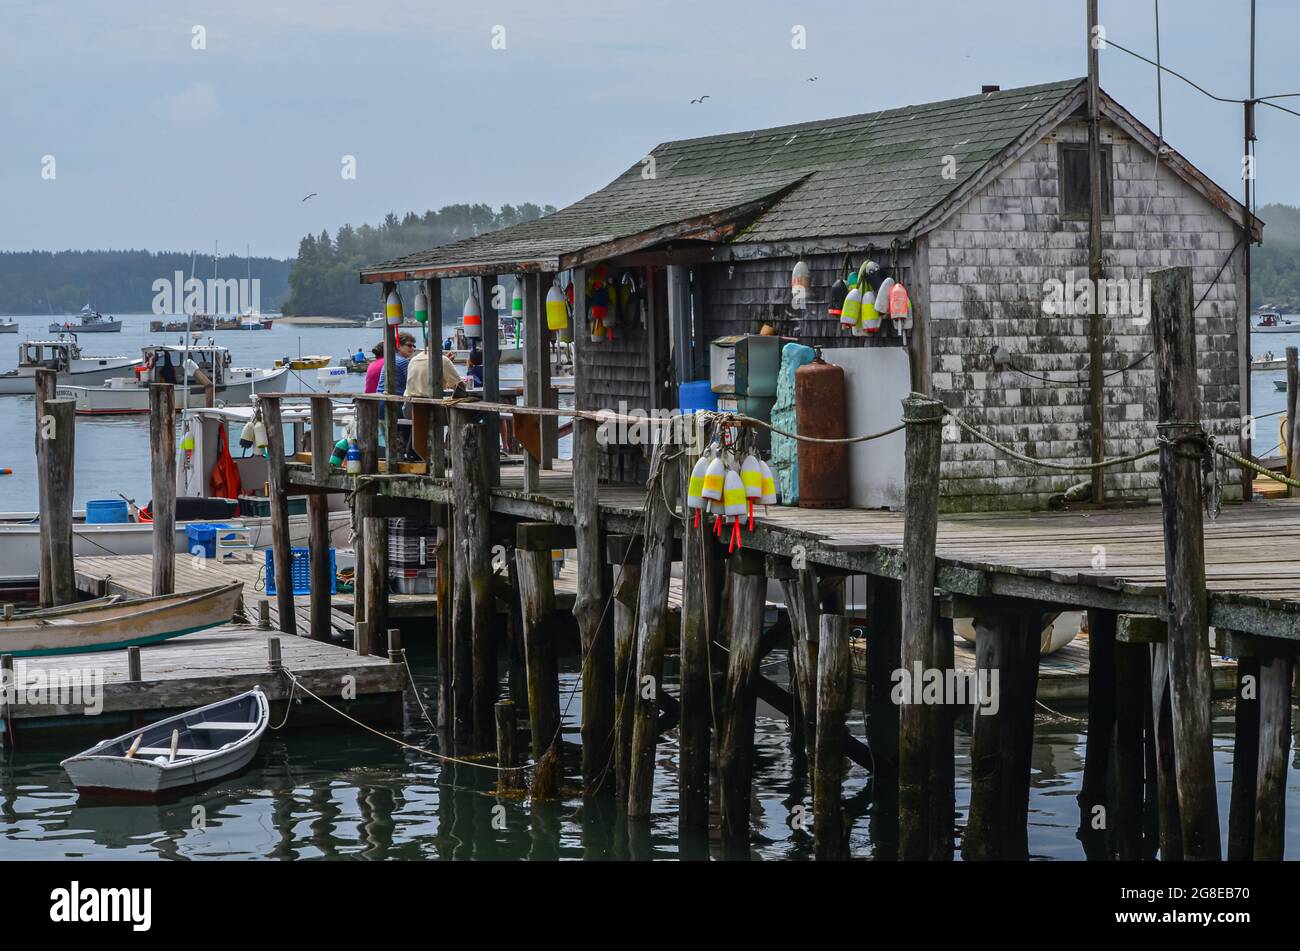 Un vecchio negozio sulla cima di un molo alto. L'altezza del molo indica l'estremo raggio di marea che si trova nel porto di Friendship, Maine. Foto Stock